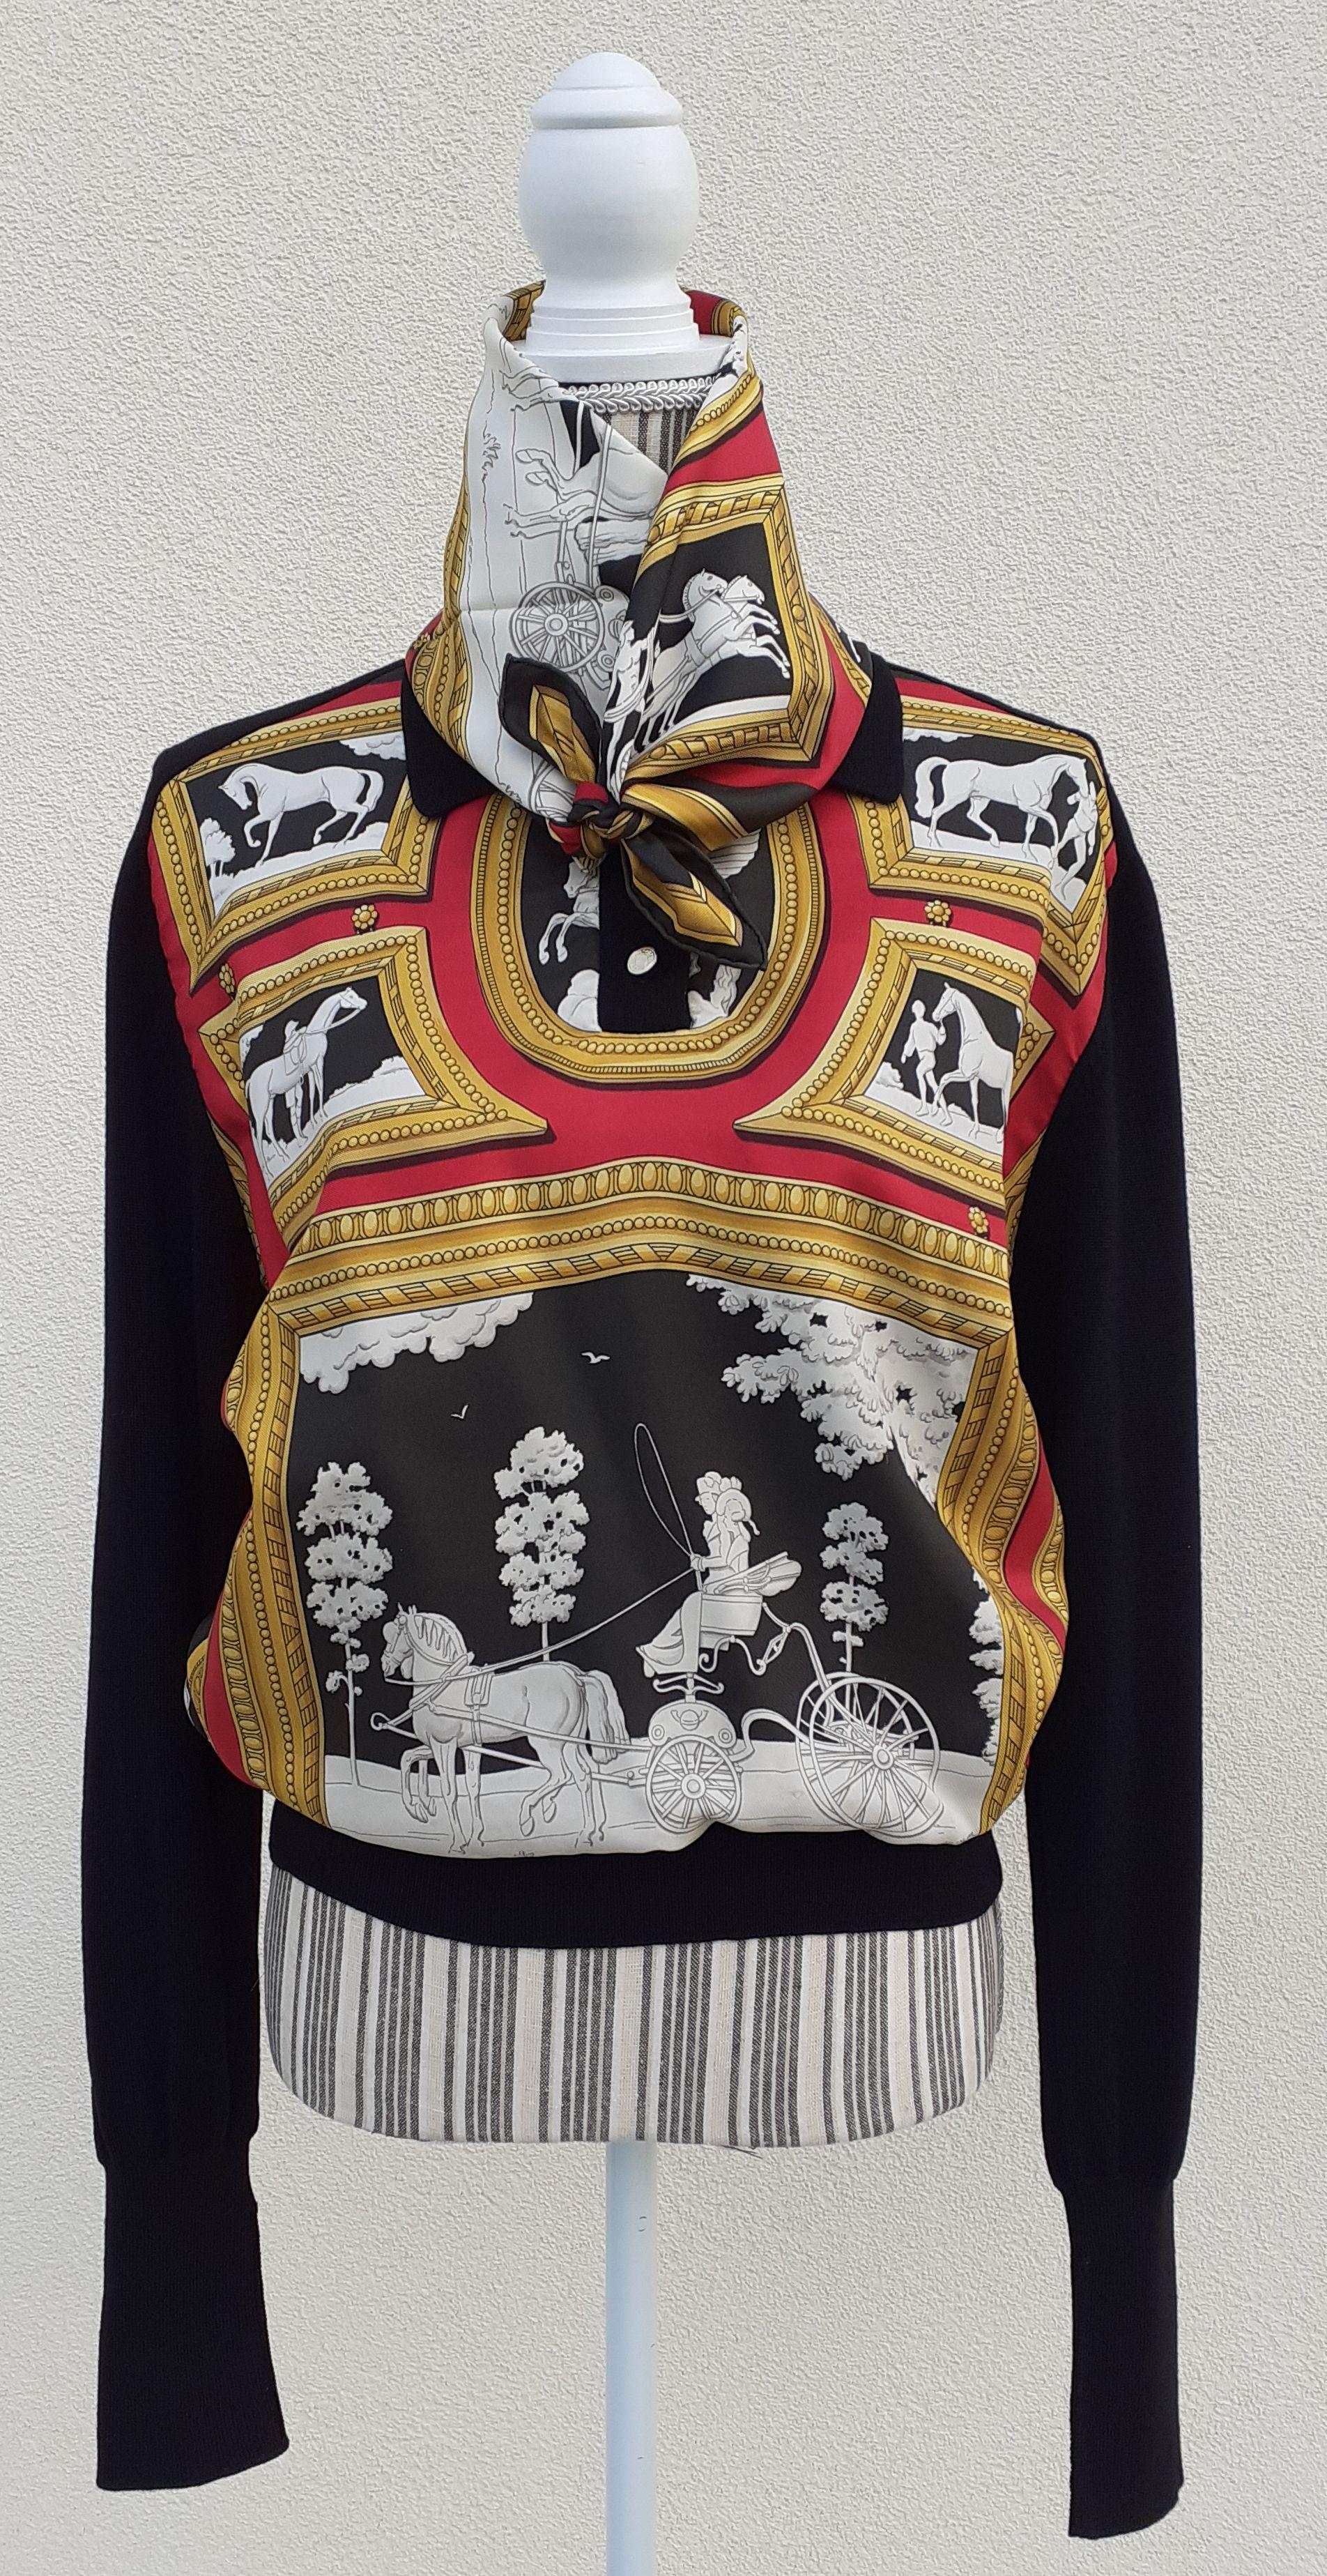 Magnifique ensemble authentique Hermès composé d'un pull-over et d'une écharpe assortie

Motif : 